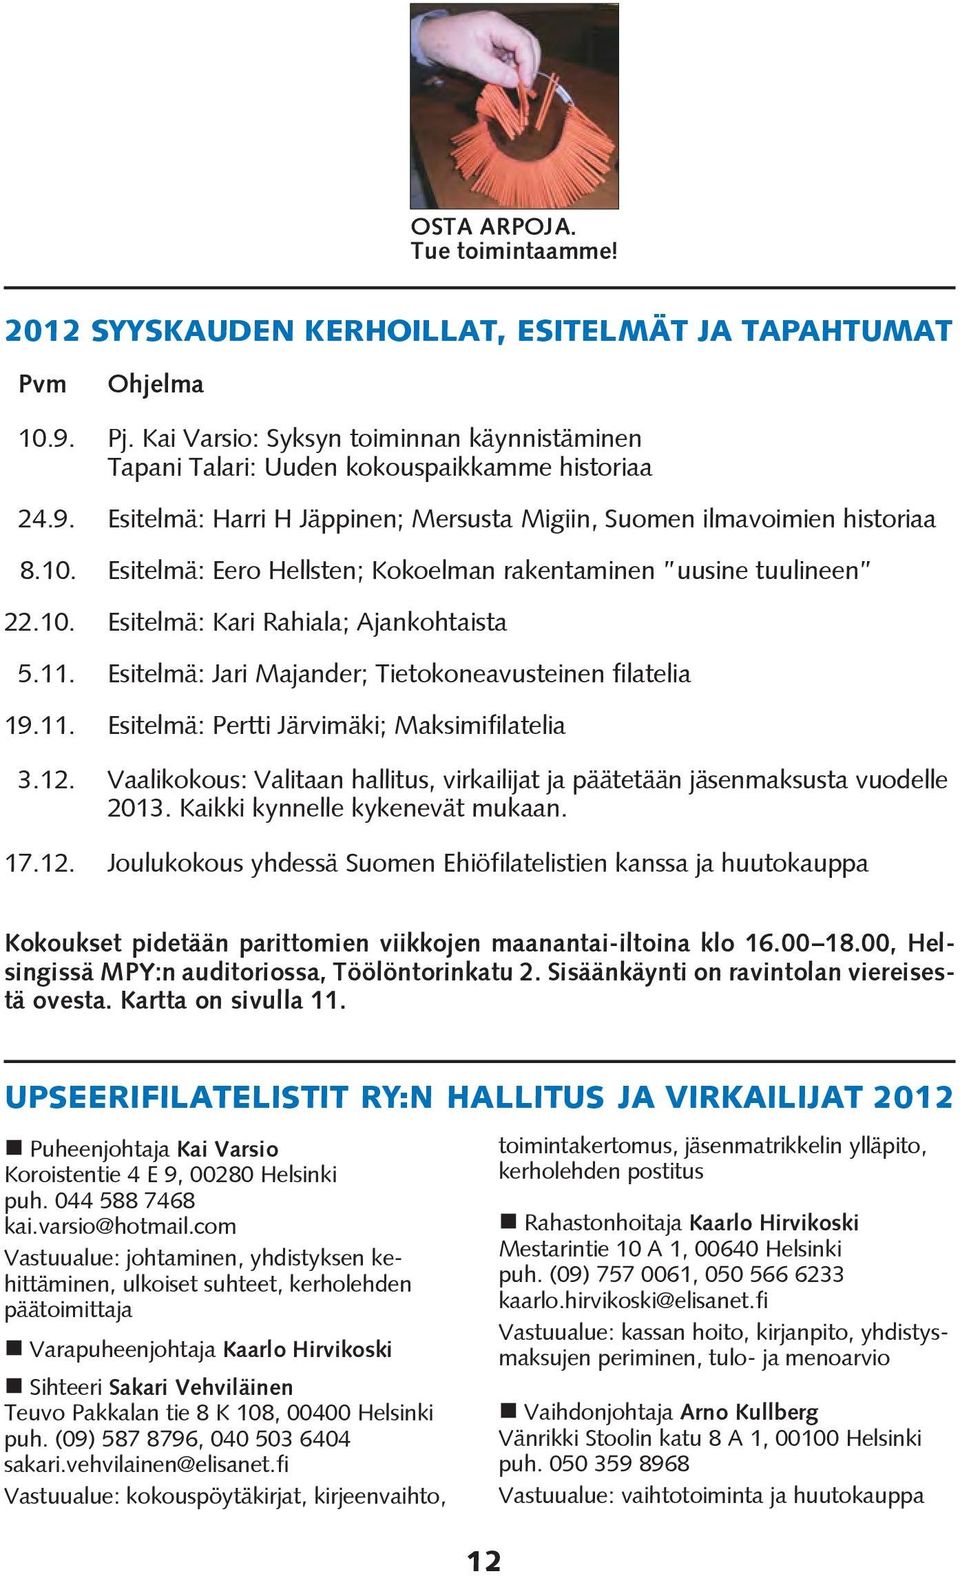 Esitelmä: Jari Majander; Tietokoneavusteinen filatelia 19.11. Esitelmä: Pertti Järvimäki; Maksimifilatelia 3.12. Vaalikokous: Valitaan hallitus, virkailijat ja päätetään jäsenmaksusta vuodelle 2013.